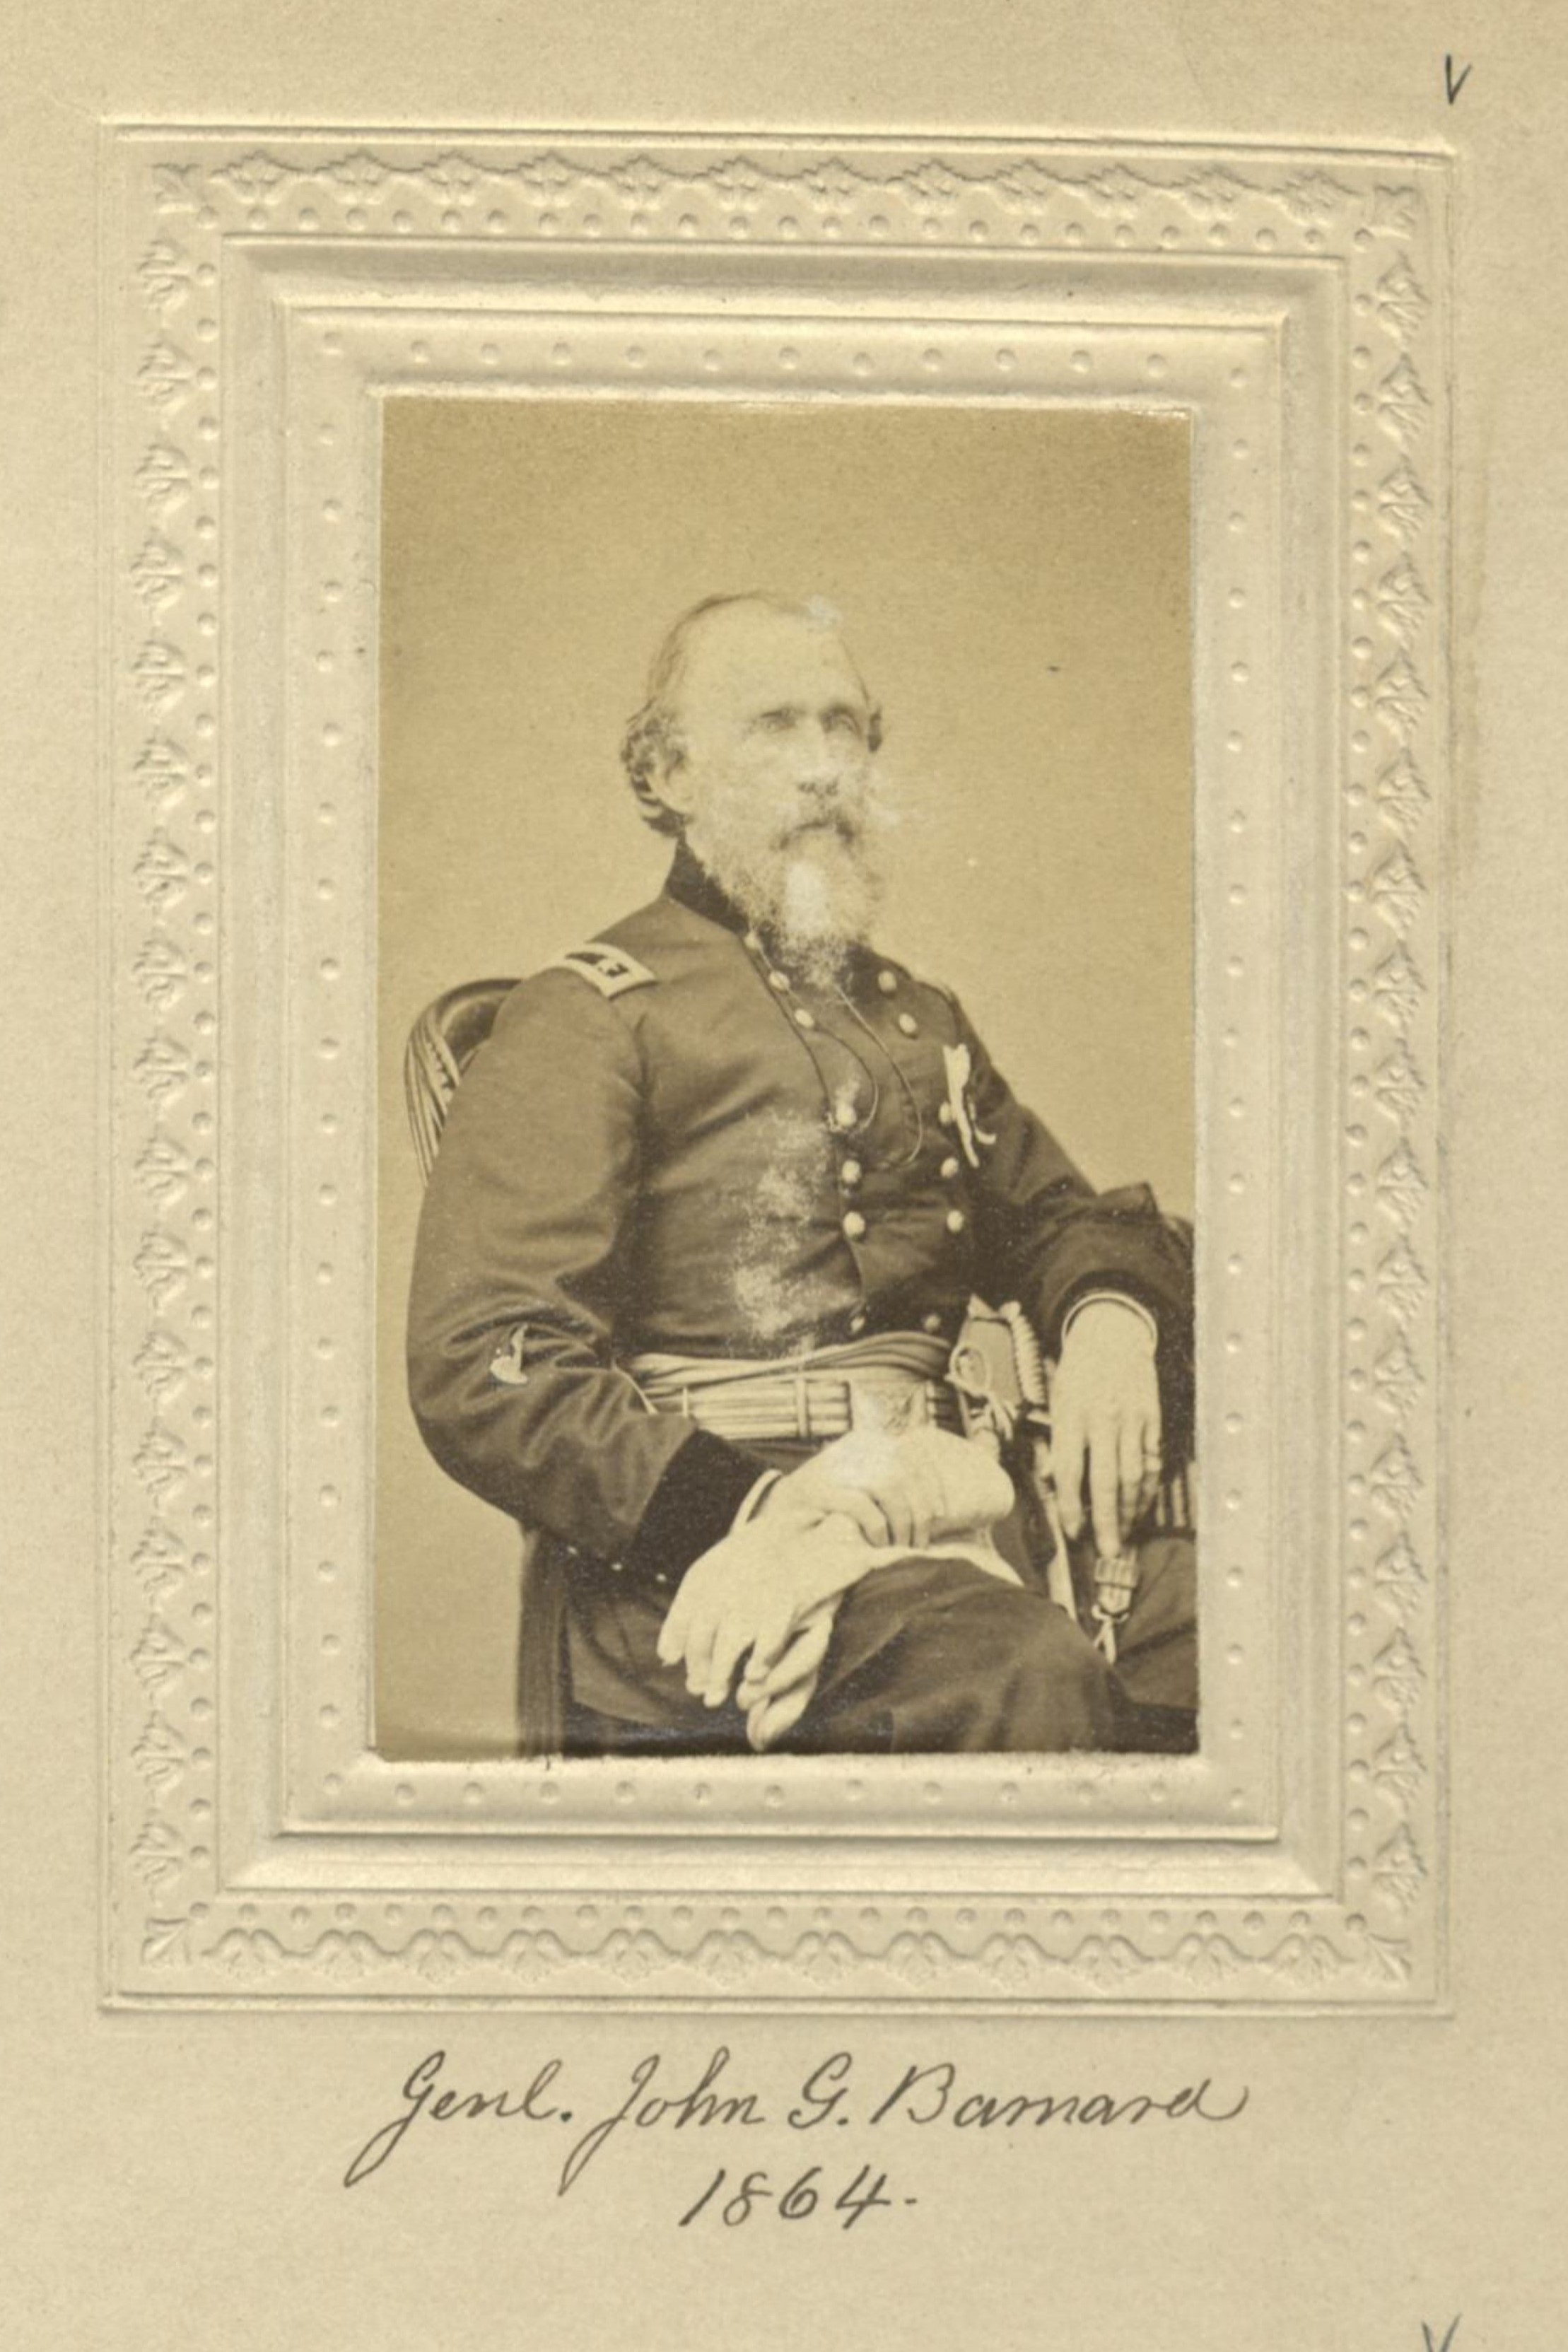 Member portrait of John G. Barnard